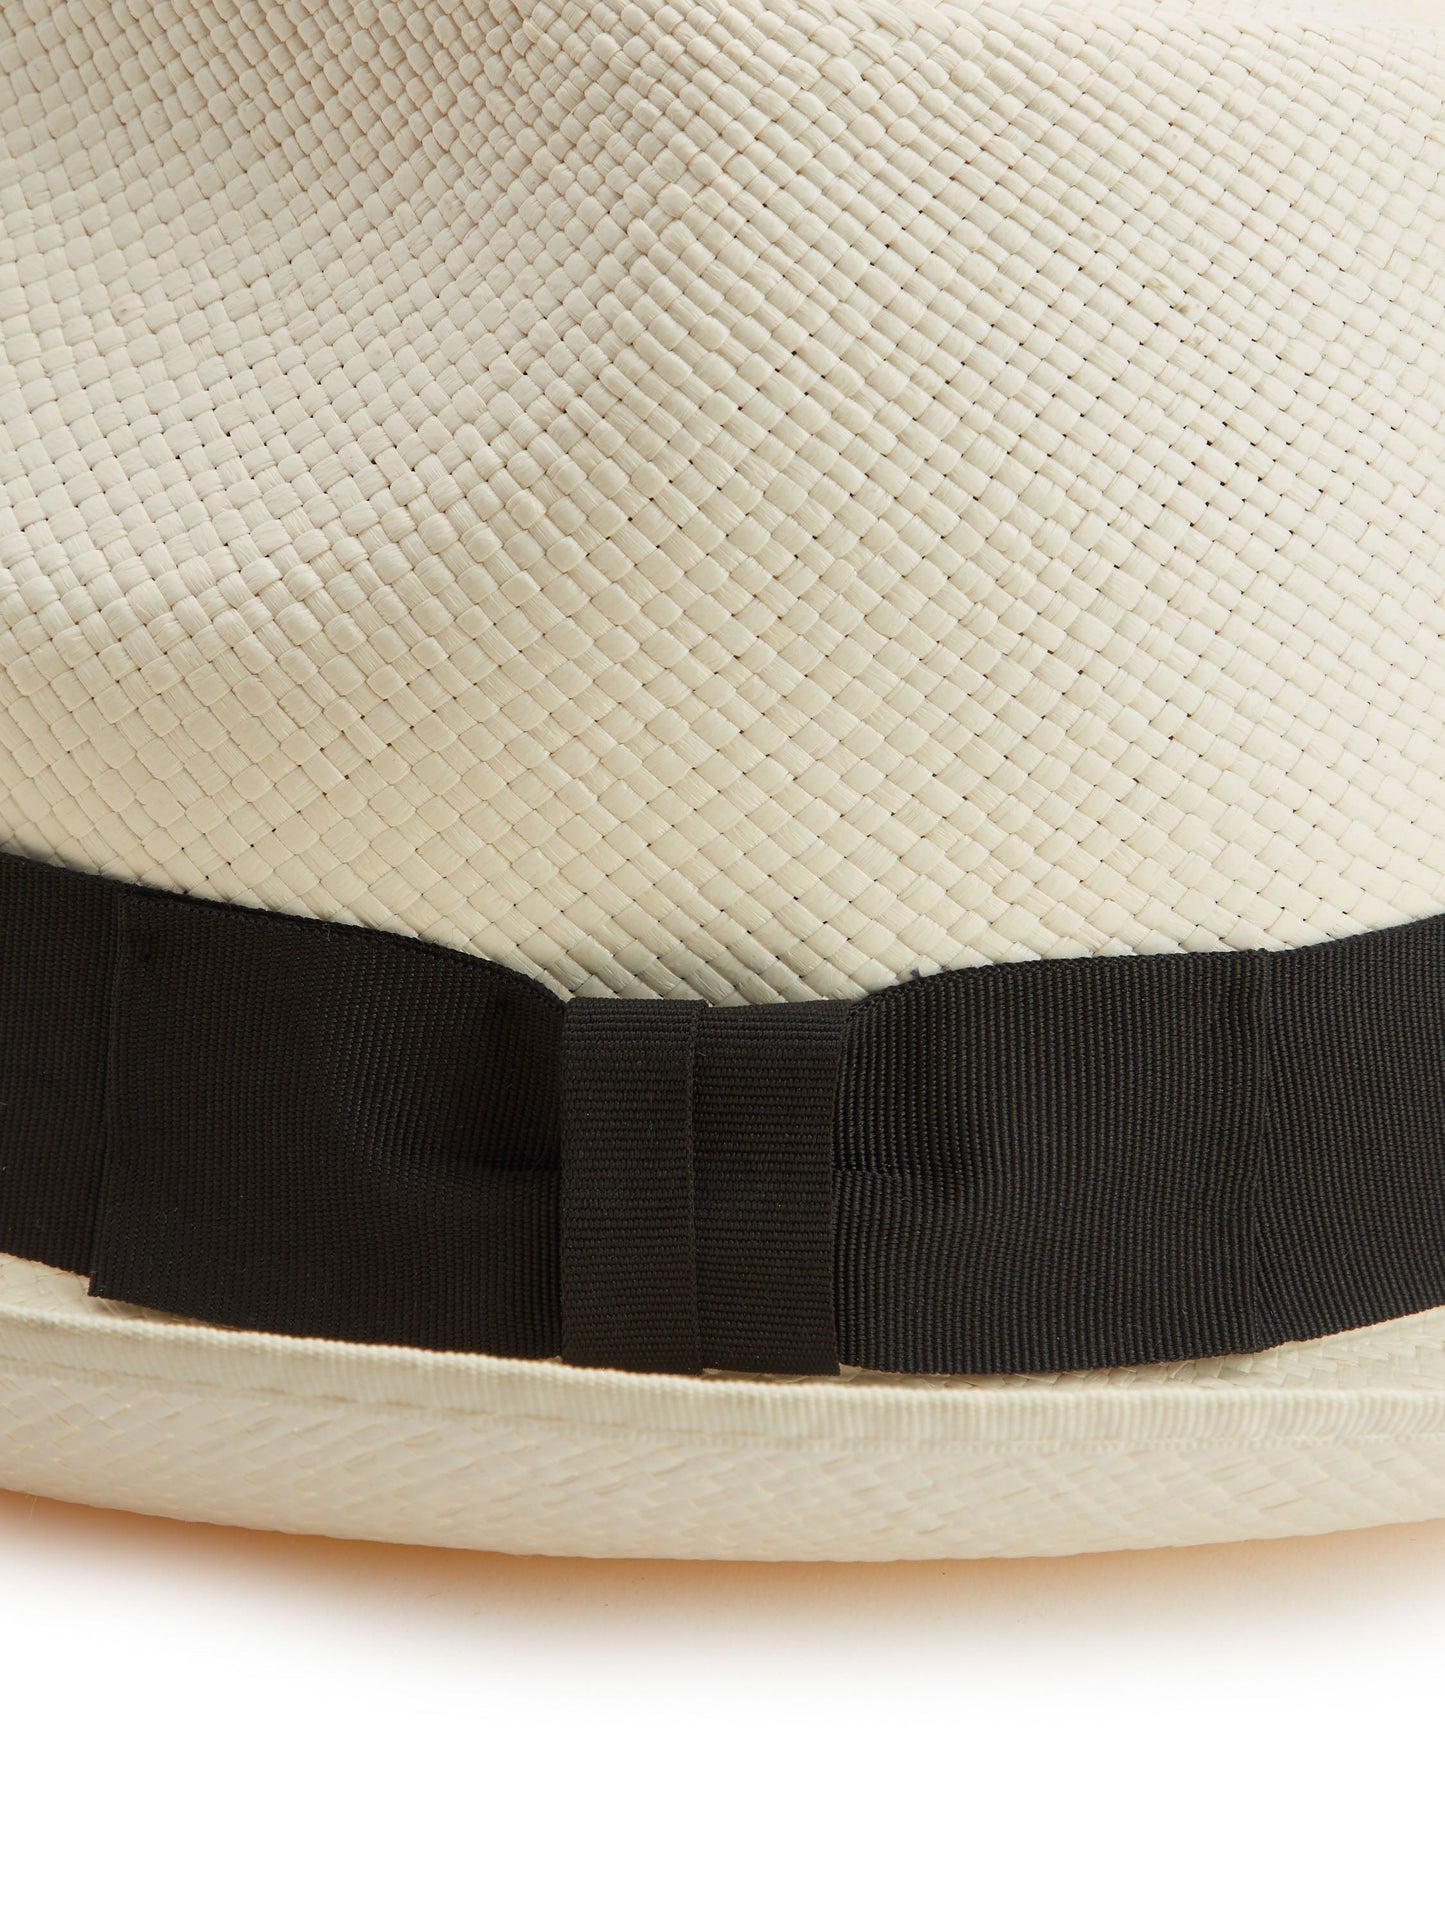 Brisa Panama Hat